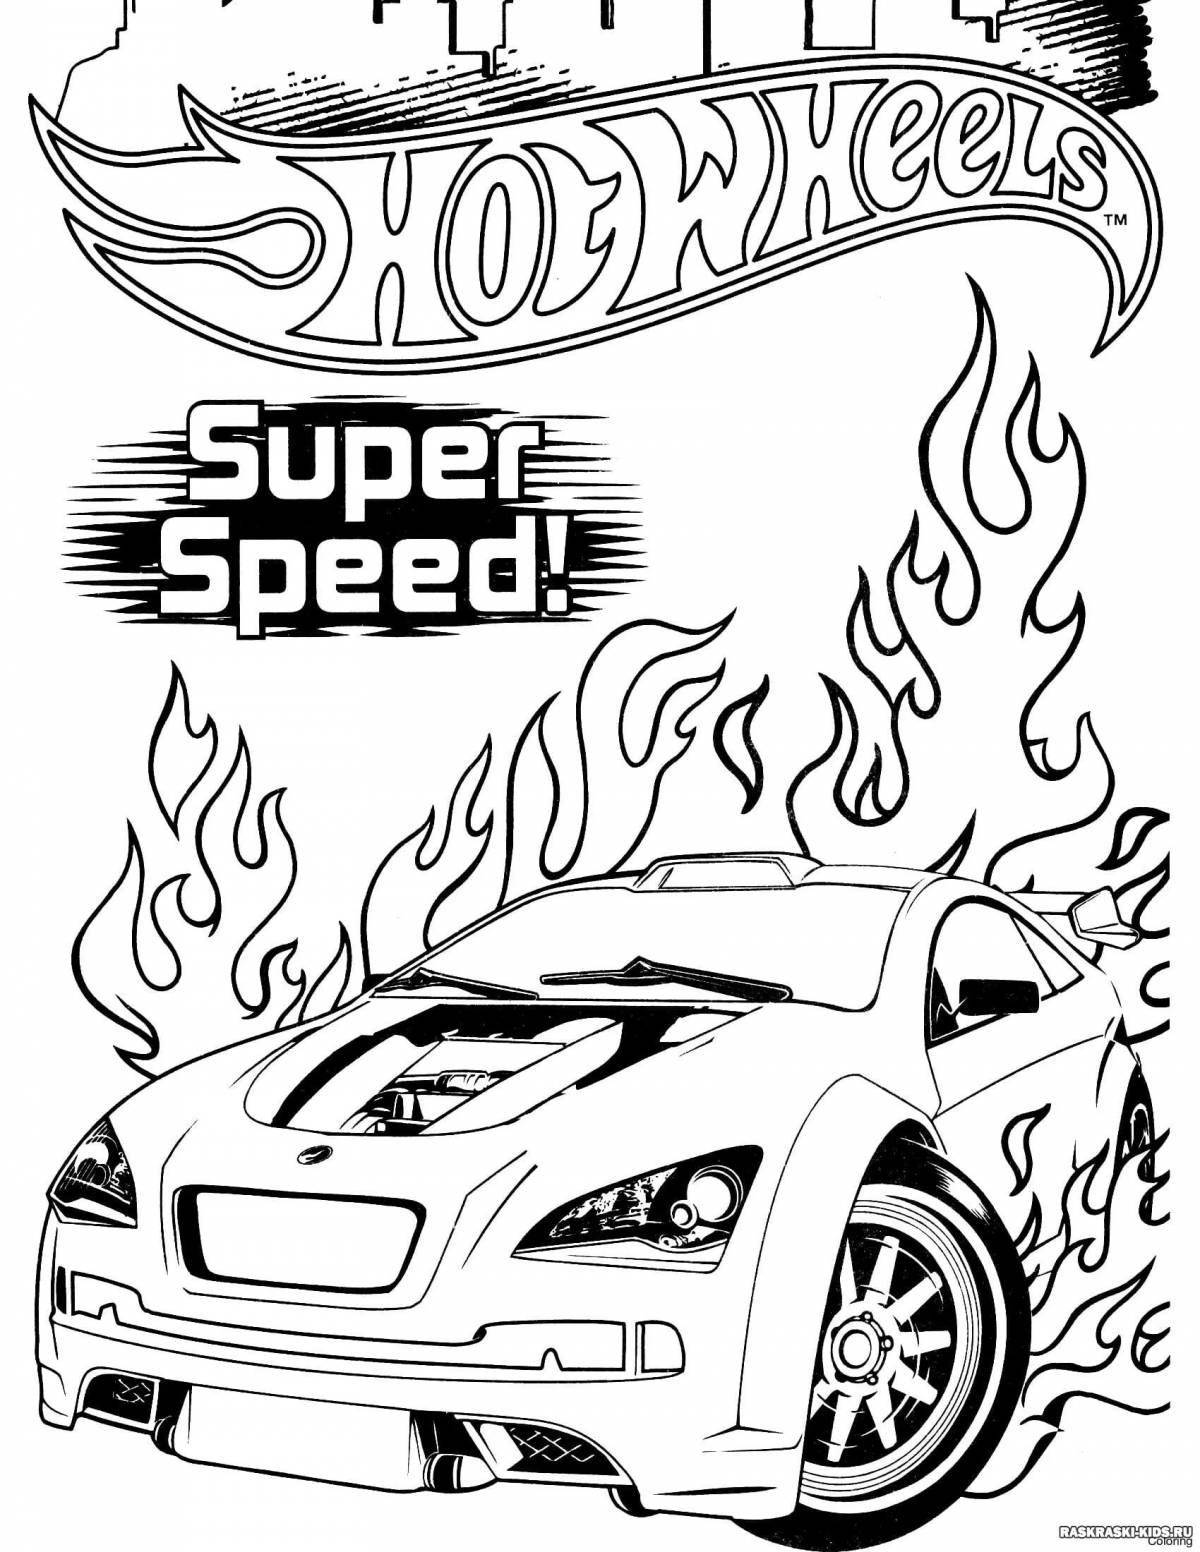 Fun hot wheels coloring book for boys